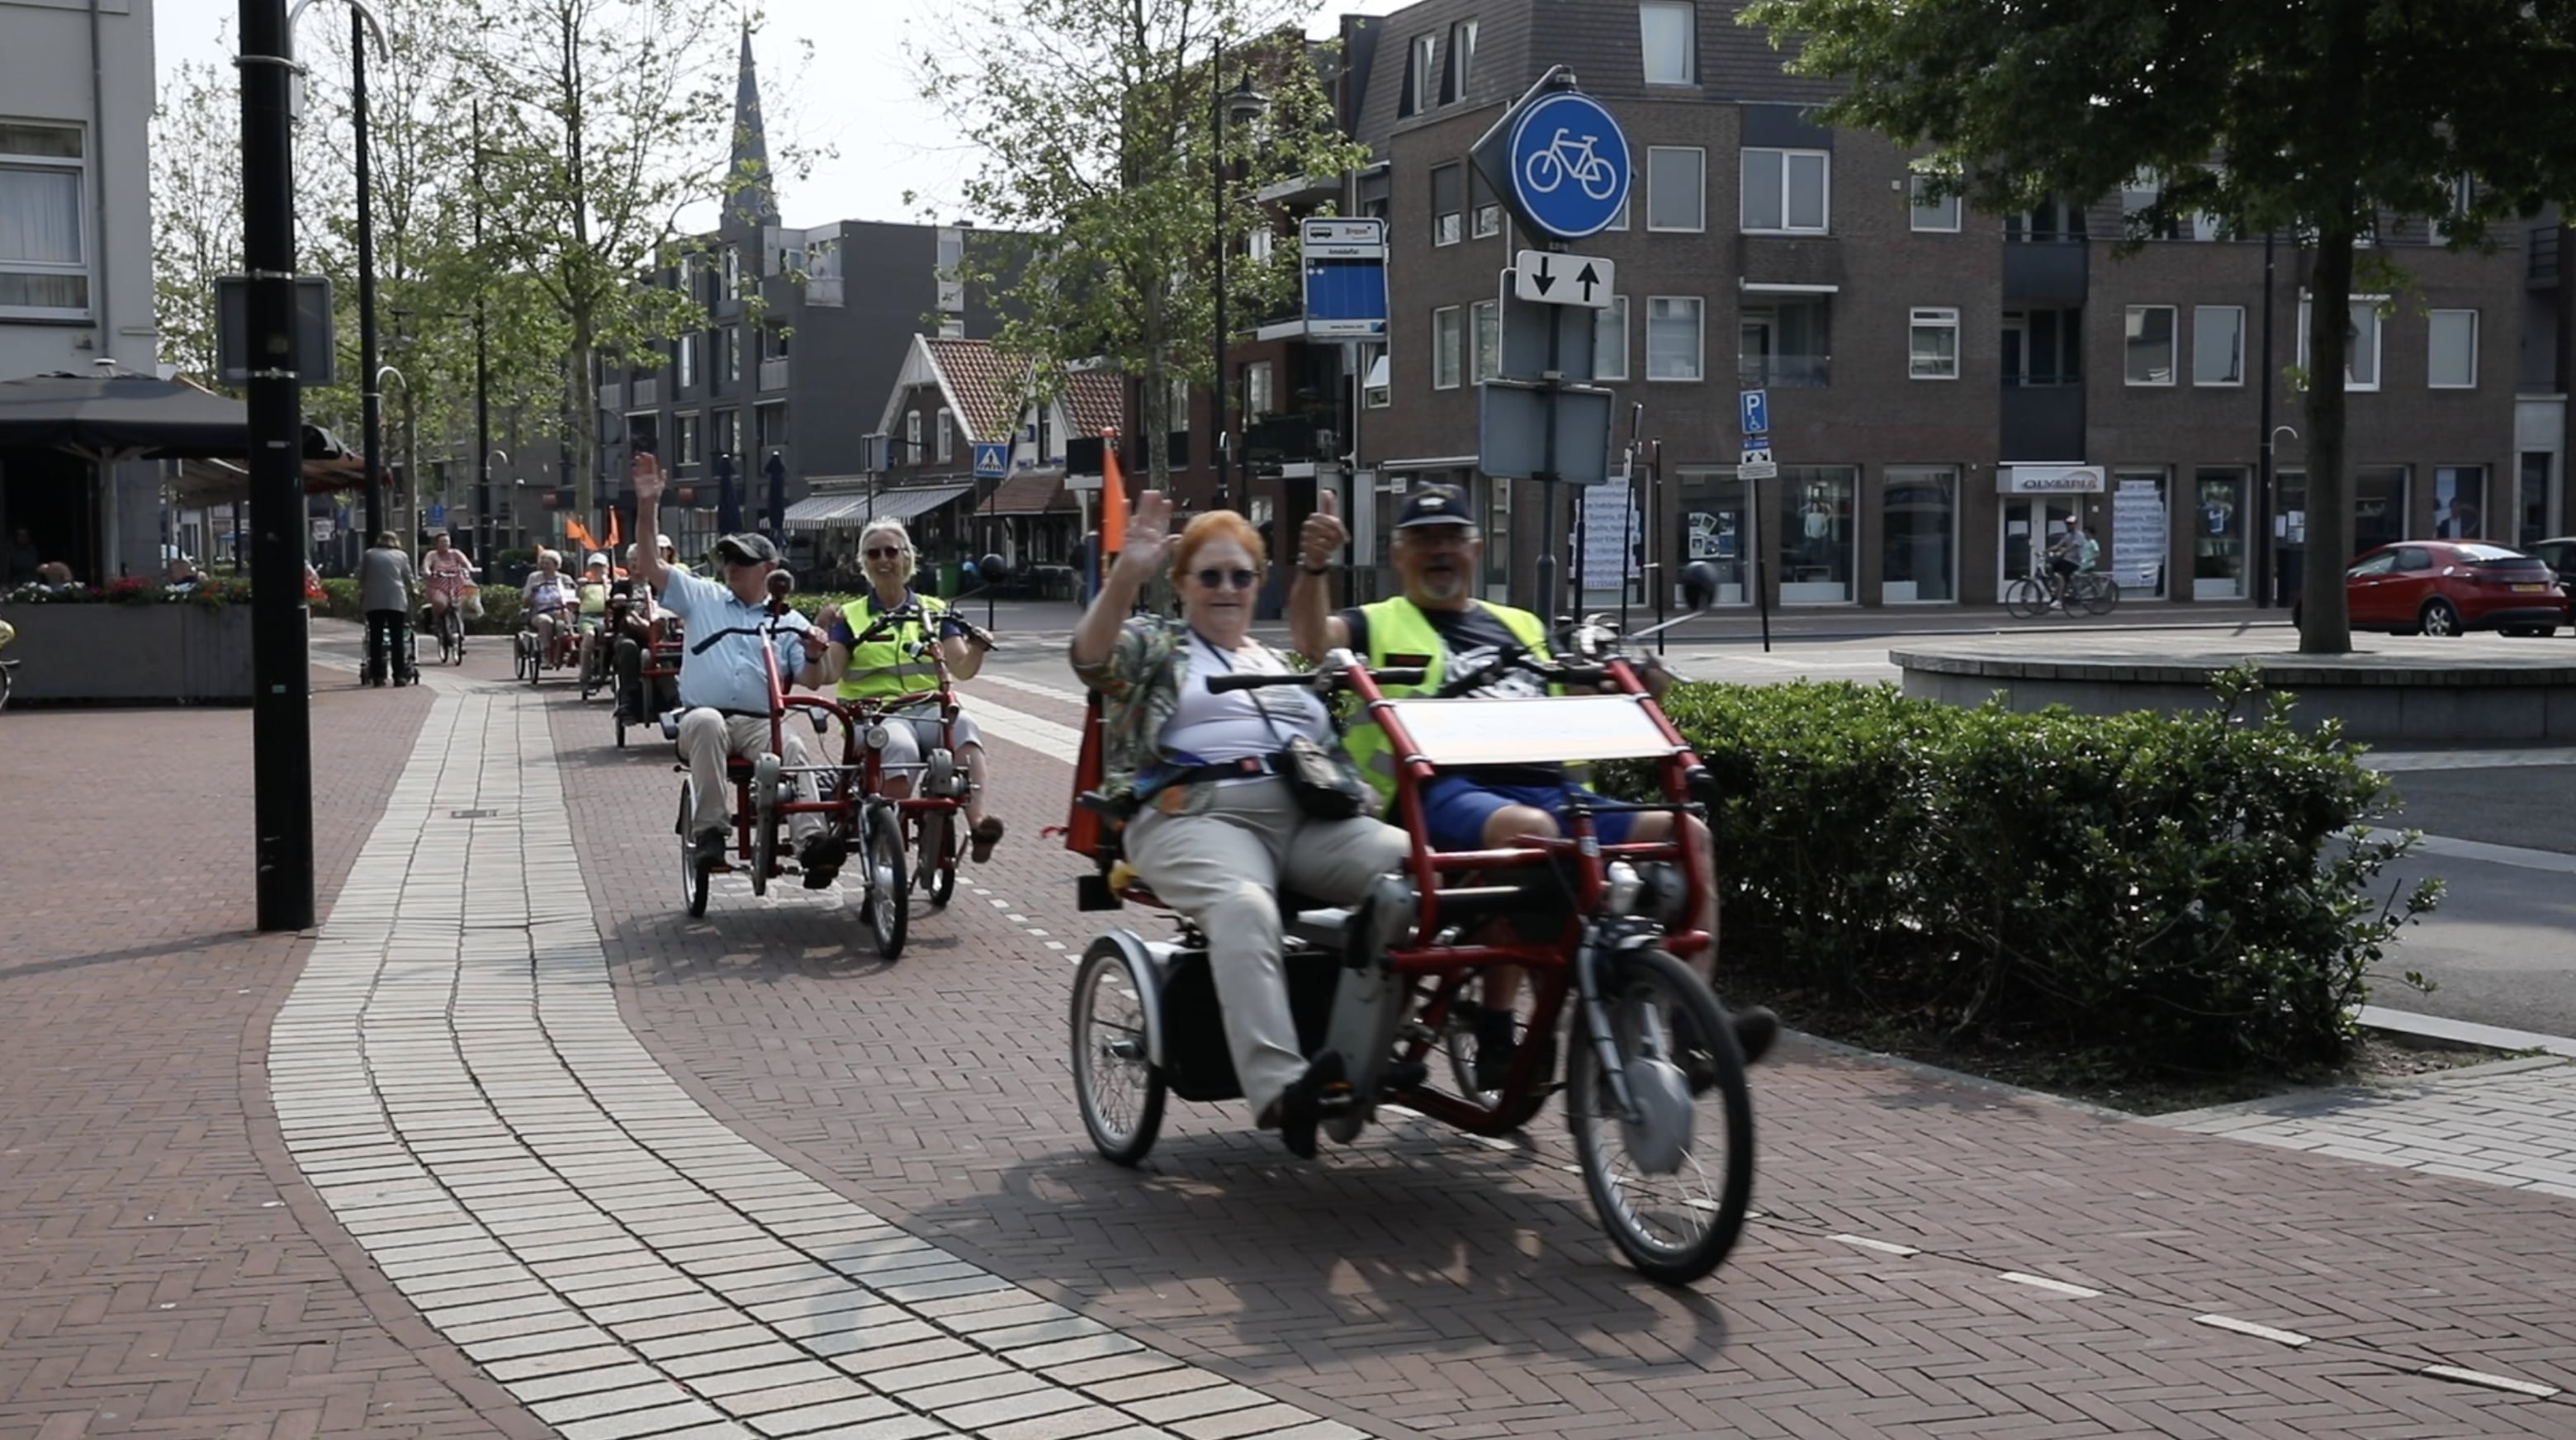 Wij dromen van 2024, dan hebben we 12 fietsen en kunnen we 1200 gasten per jaar een mooie rit bezorgen. We hebben inmiddels 120 vrijwillige ritleiders, maar dat zullen er 150 moeten worden, aldus Daphne Scholten.